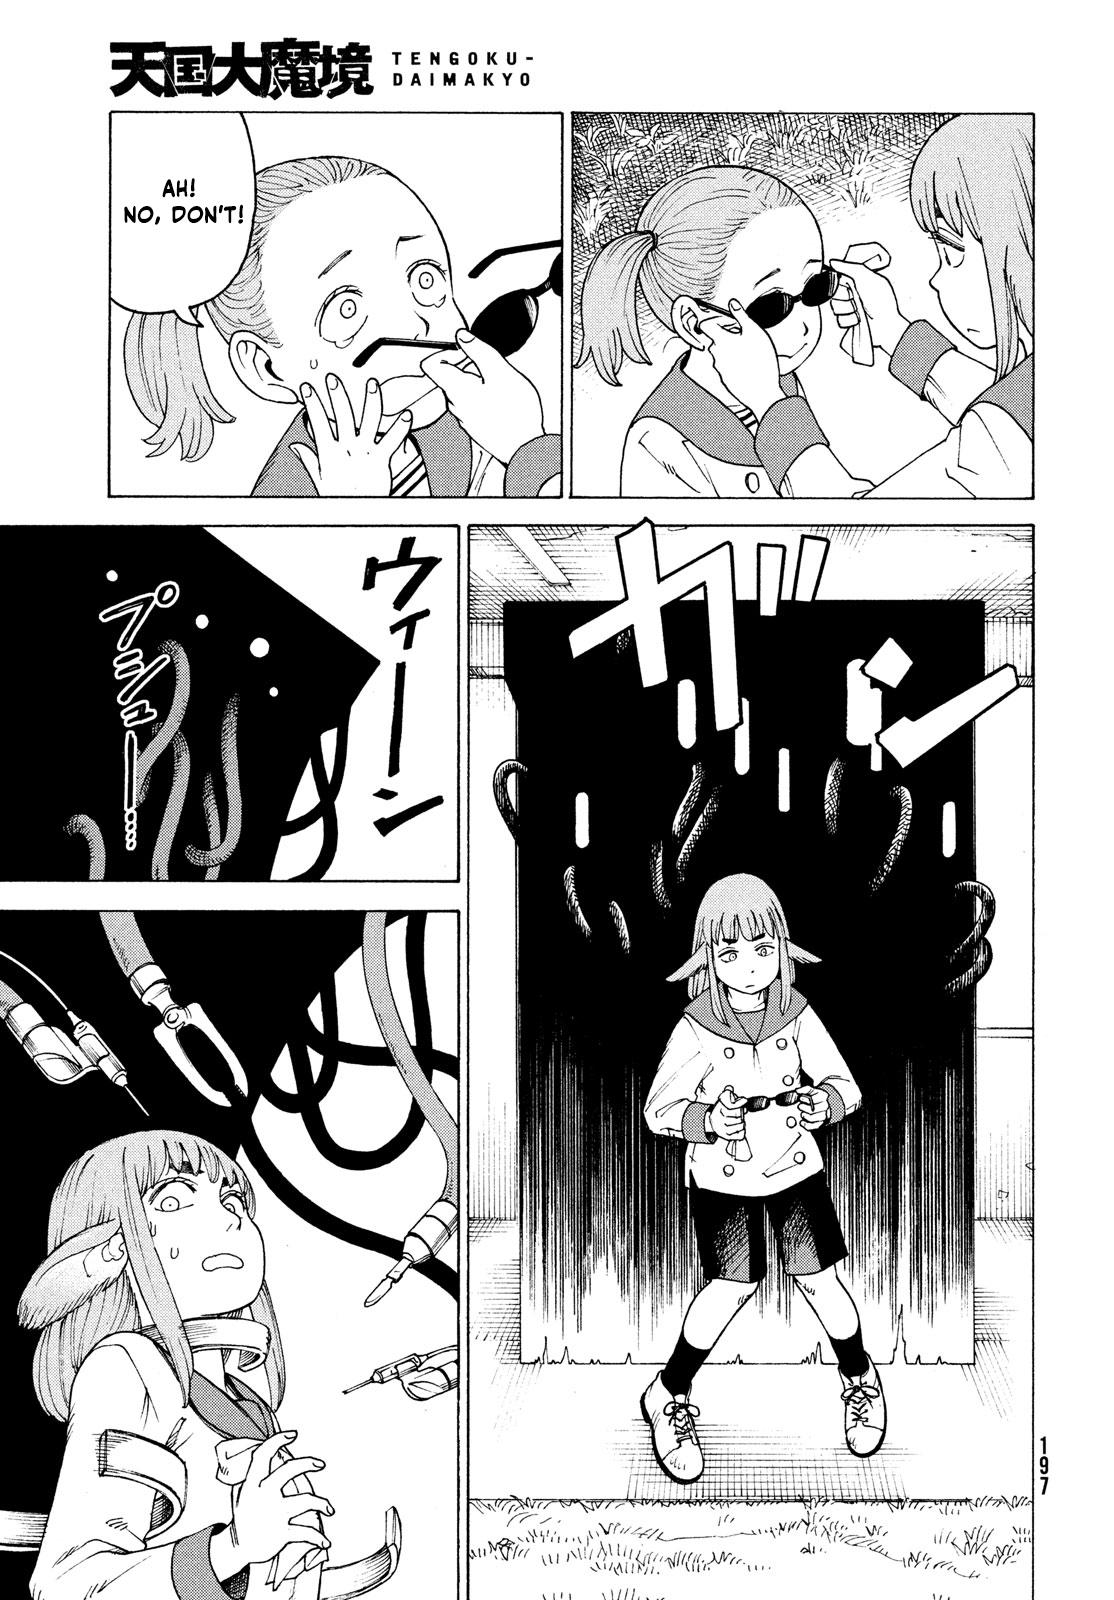 Tengoku Daimakyou Chapter 34: Inazaki Robin ➂ page 13 - Mangakakalot